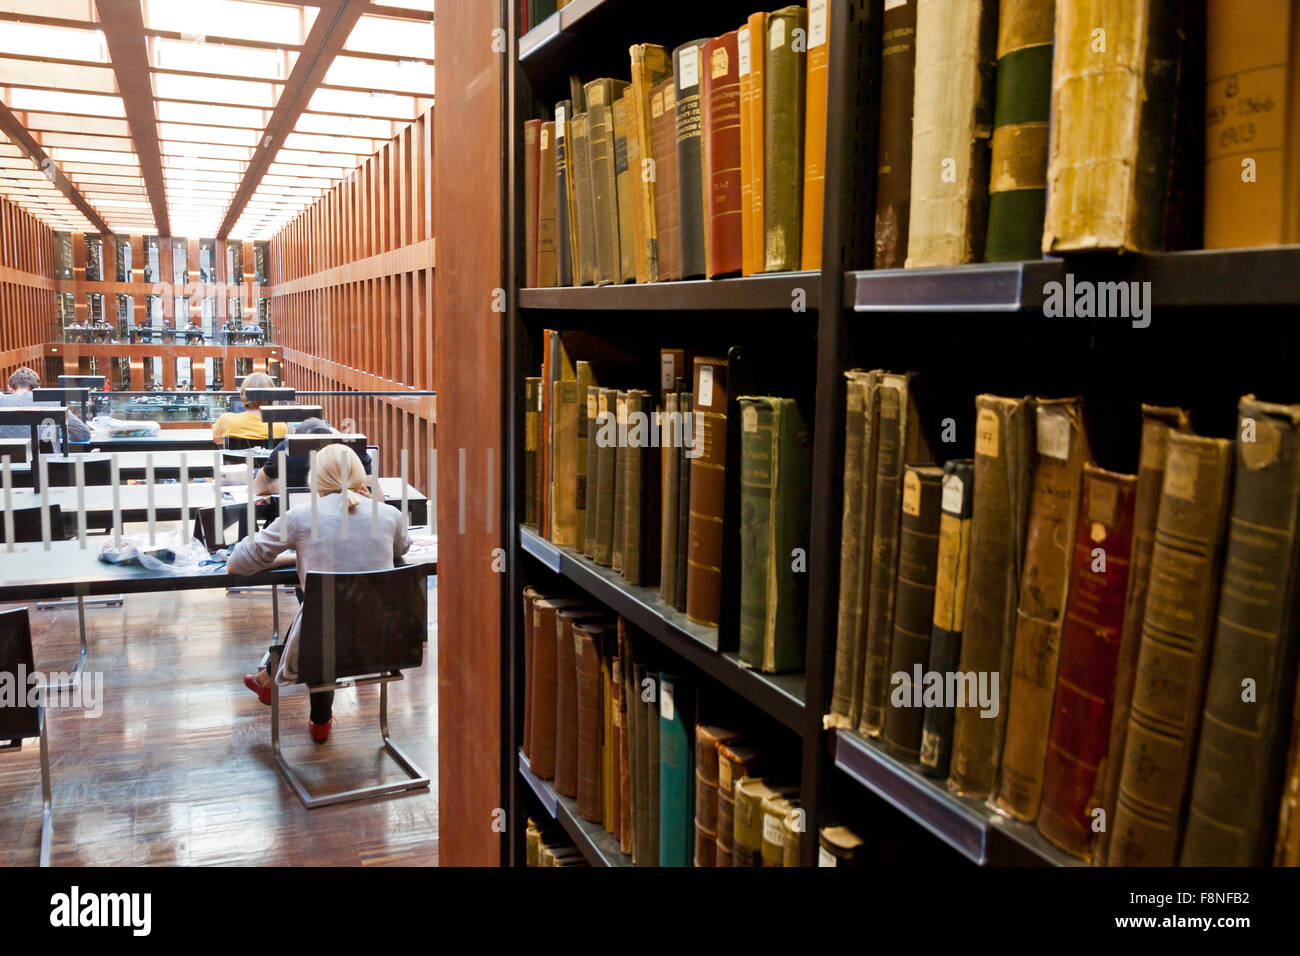 BERLIN, Deutschland - 1. Juli 2014: Humboldt-Universität Bibliothek in Berlin. Es ist eines der fortschrittlichsten wissenschaftlichen Bibliotheken in Ge Stockfoto